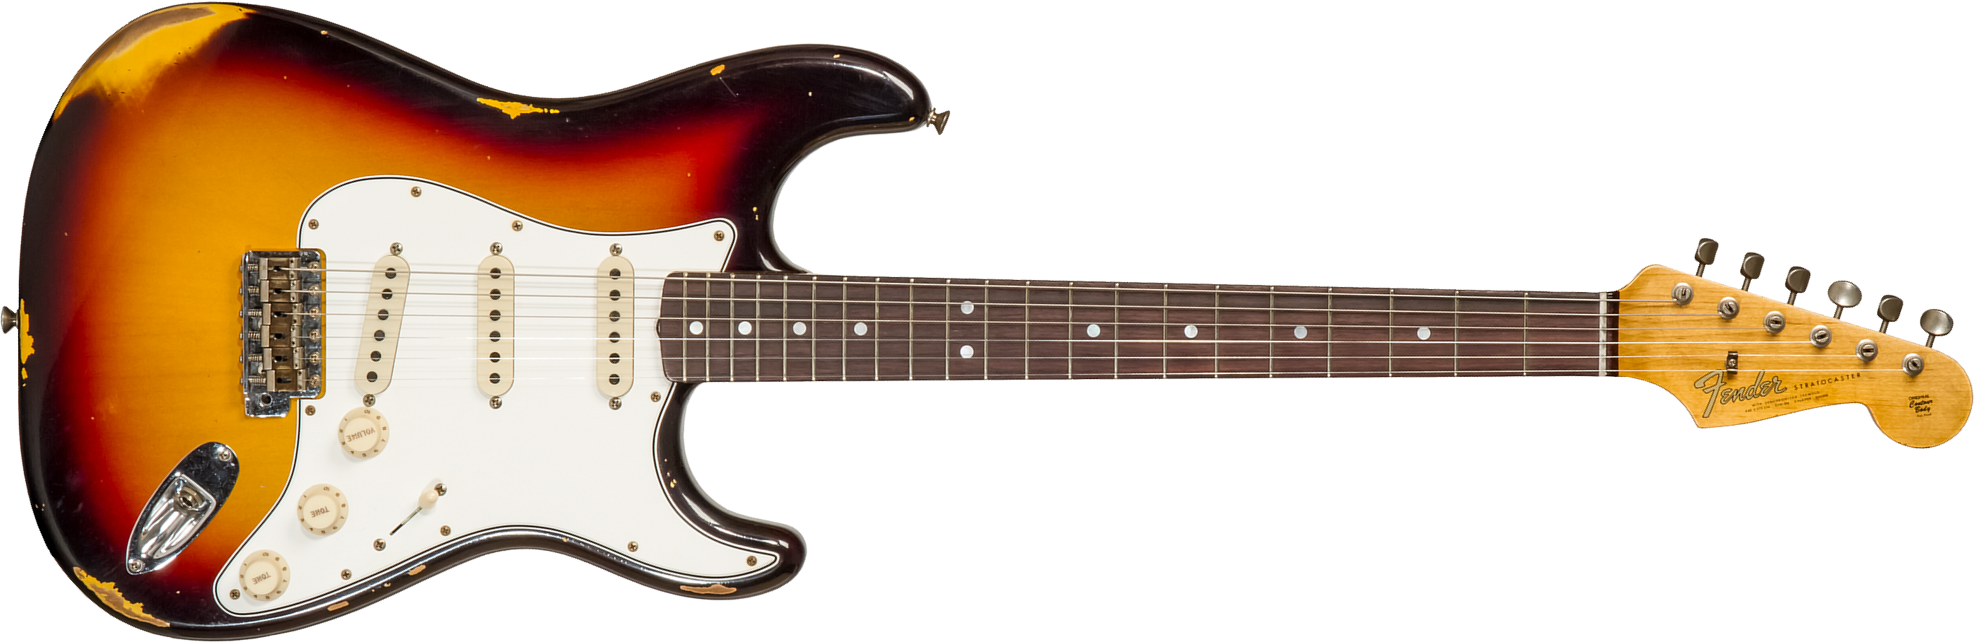 Fender Custom Shop Strat Late 1964 3s Trem Rw #cz569925 - Relic Target 3-color Sunburst - Str shape electric guitar - Main picture